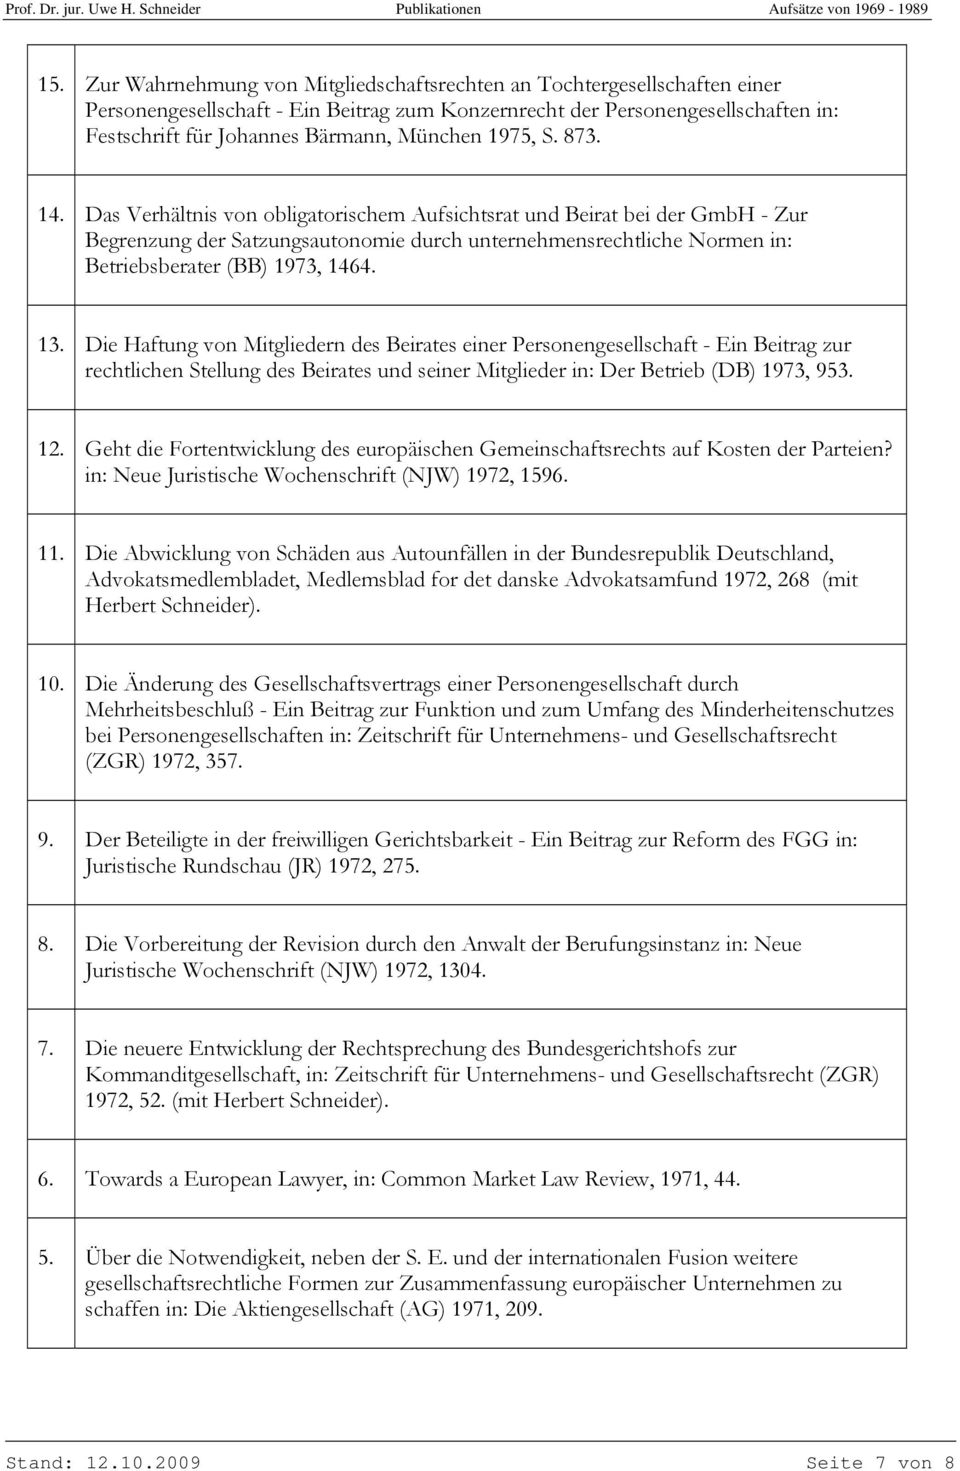 Das Verhältnis von obligatorischem Aufsichtsrat und Beirat bei der GmbH - Zur Begrenzung der Satzungsautonomie durch unternehmensrechtliche Normen in: Betriebsberater (BB) 1973, 1464. 13.